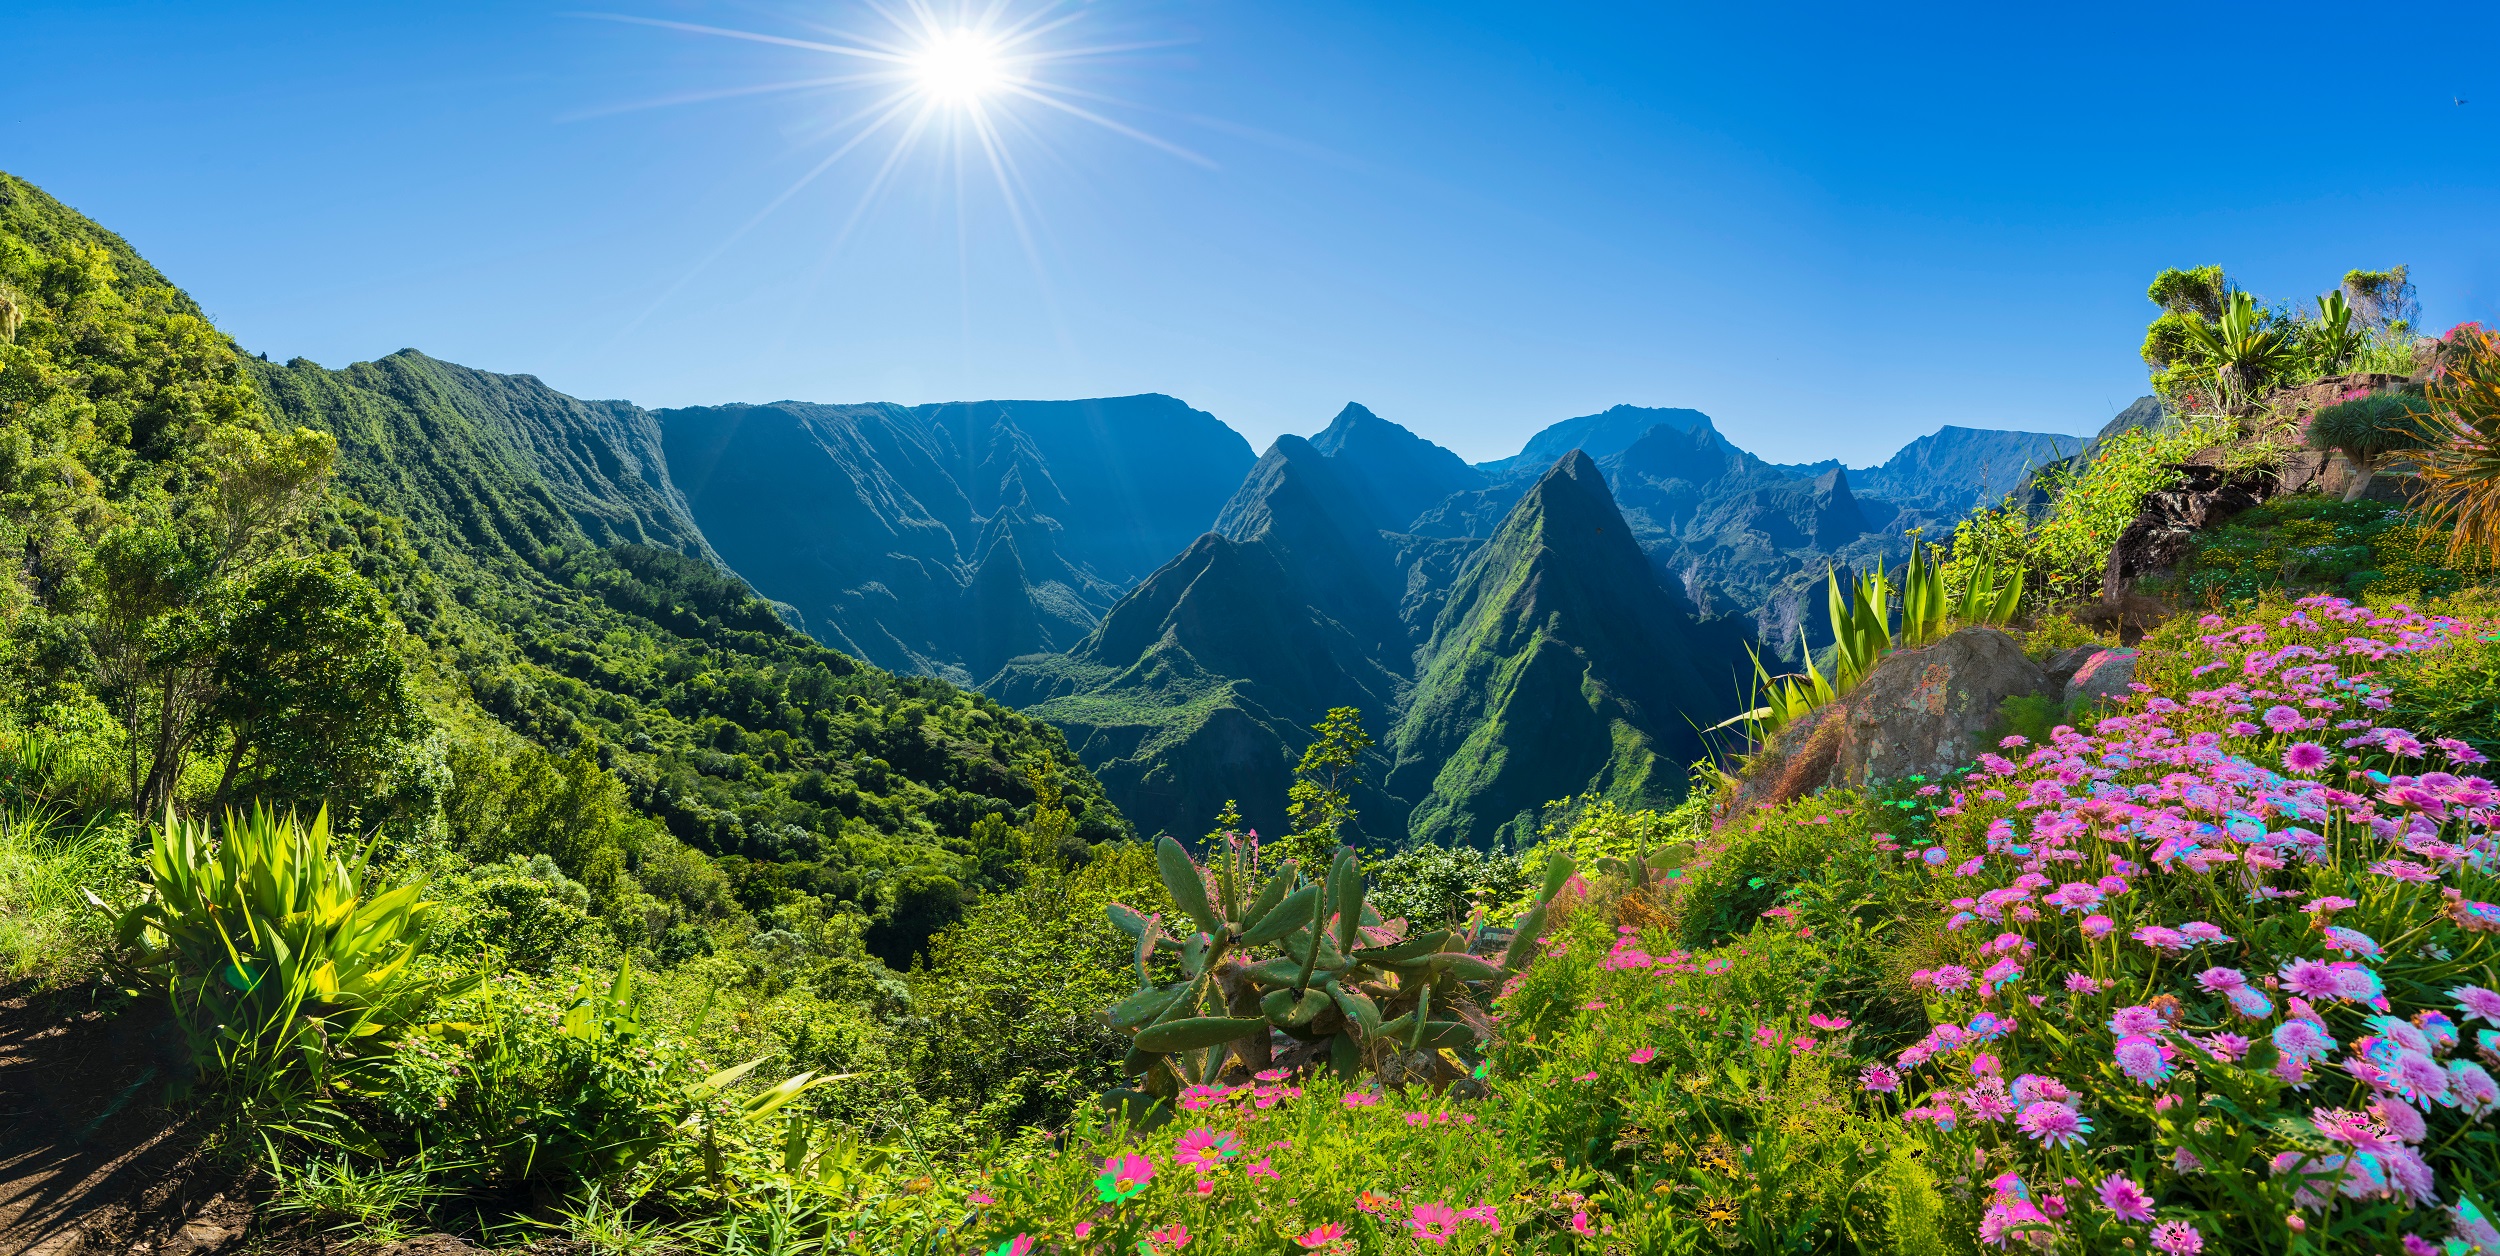 La végétation foisonnante de La Réunion disparaît un peu plus chaque année. © Serenity-H, Adobe Stock